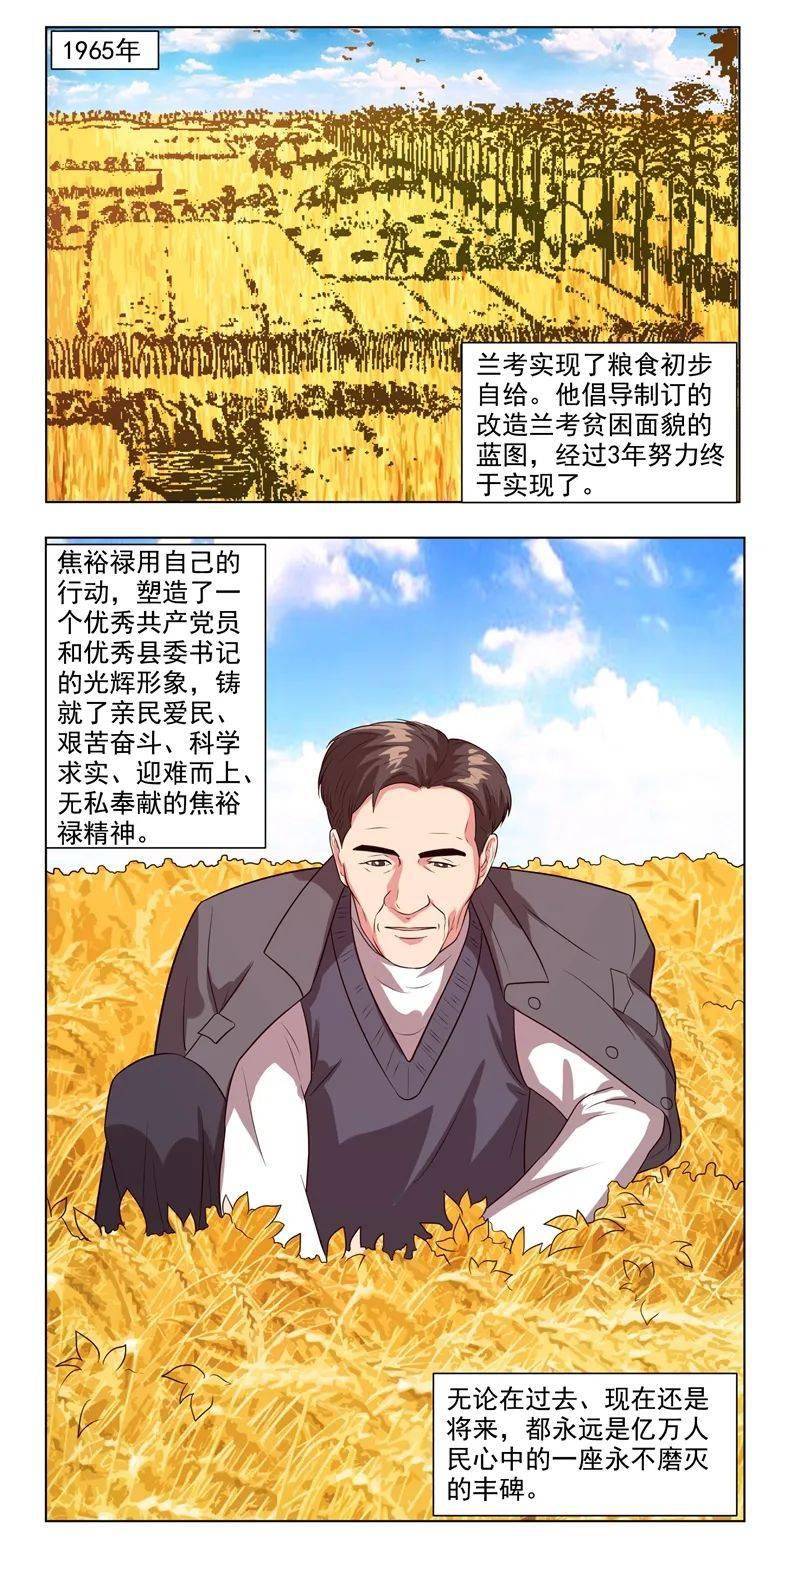 四史学习 漫说新中国史:县委书记的榜样 焦裕禄67_手机搜狐网